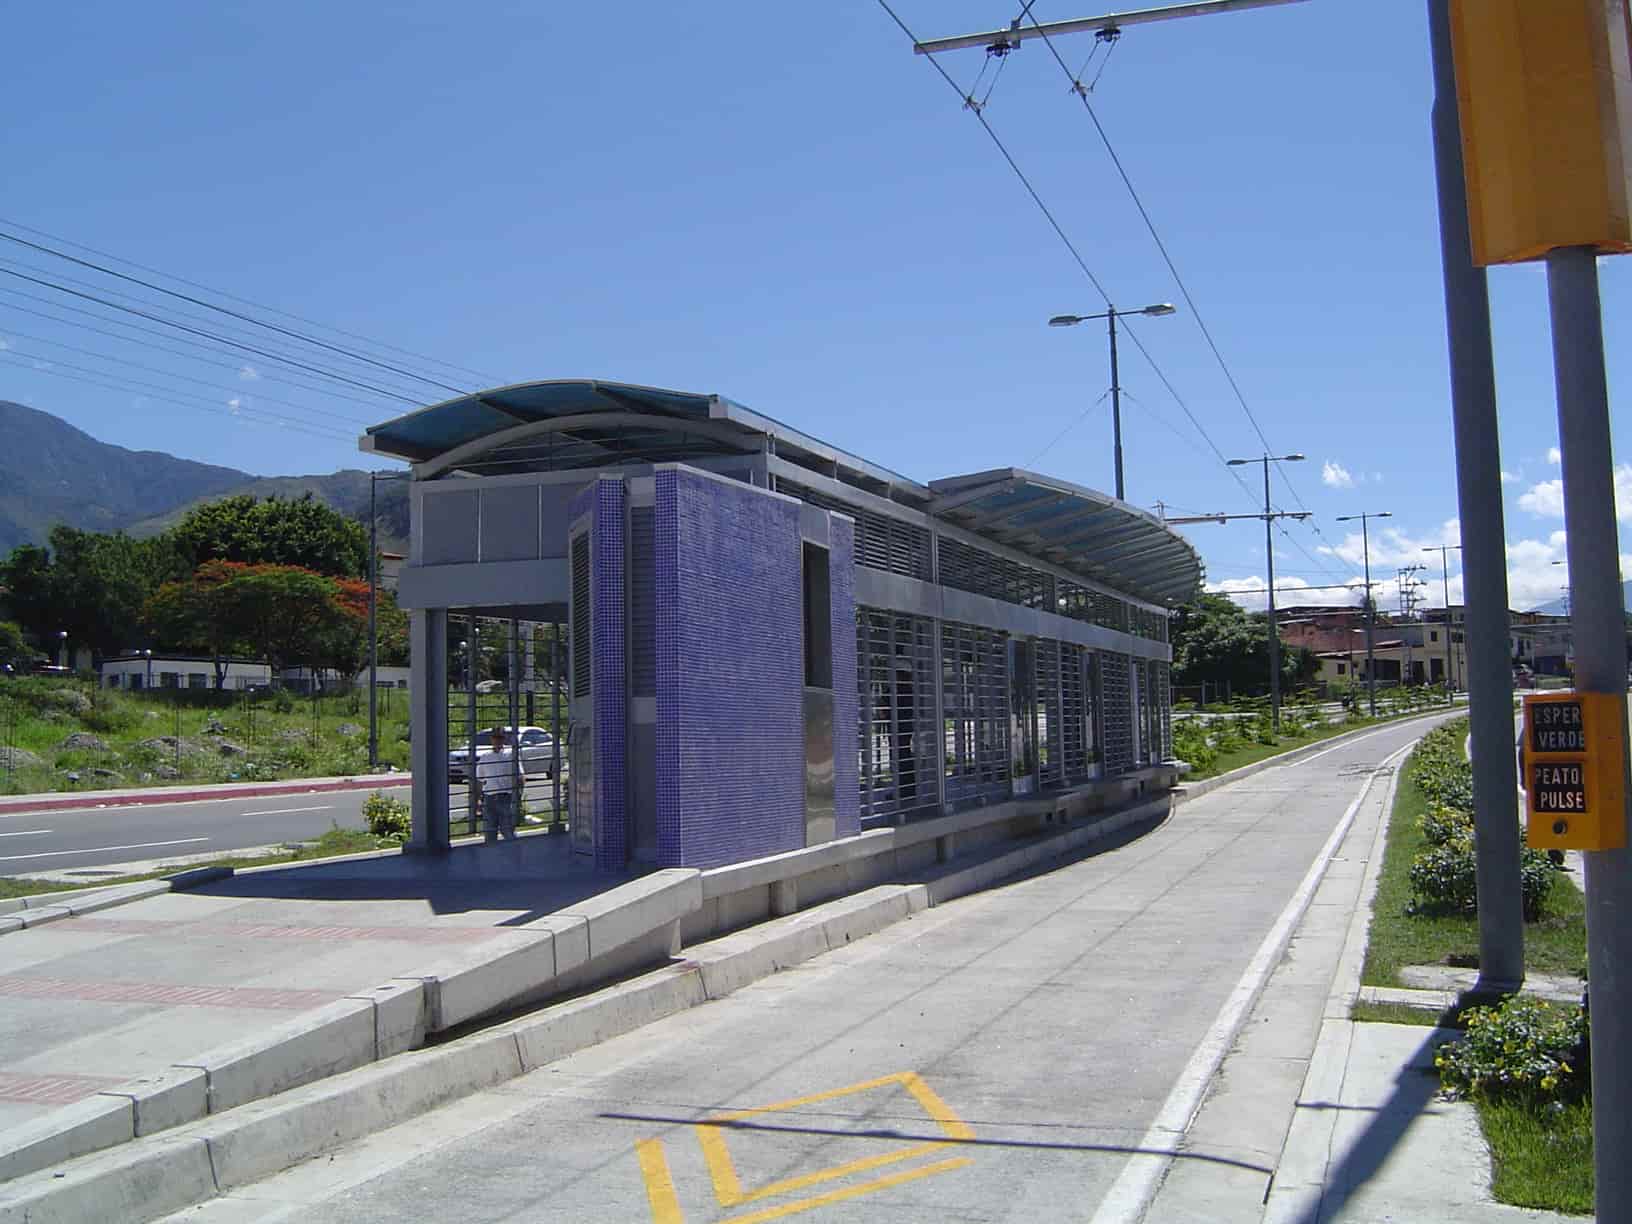 /images/imported_blog/BRT-merida-venezuela-troleBus-Bus-rapid-transit.jpg